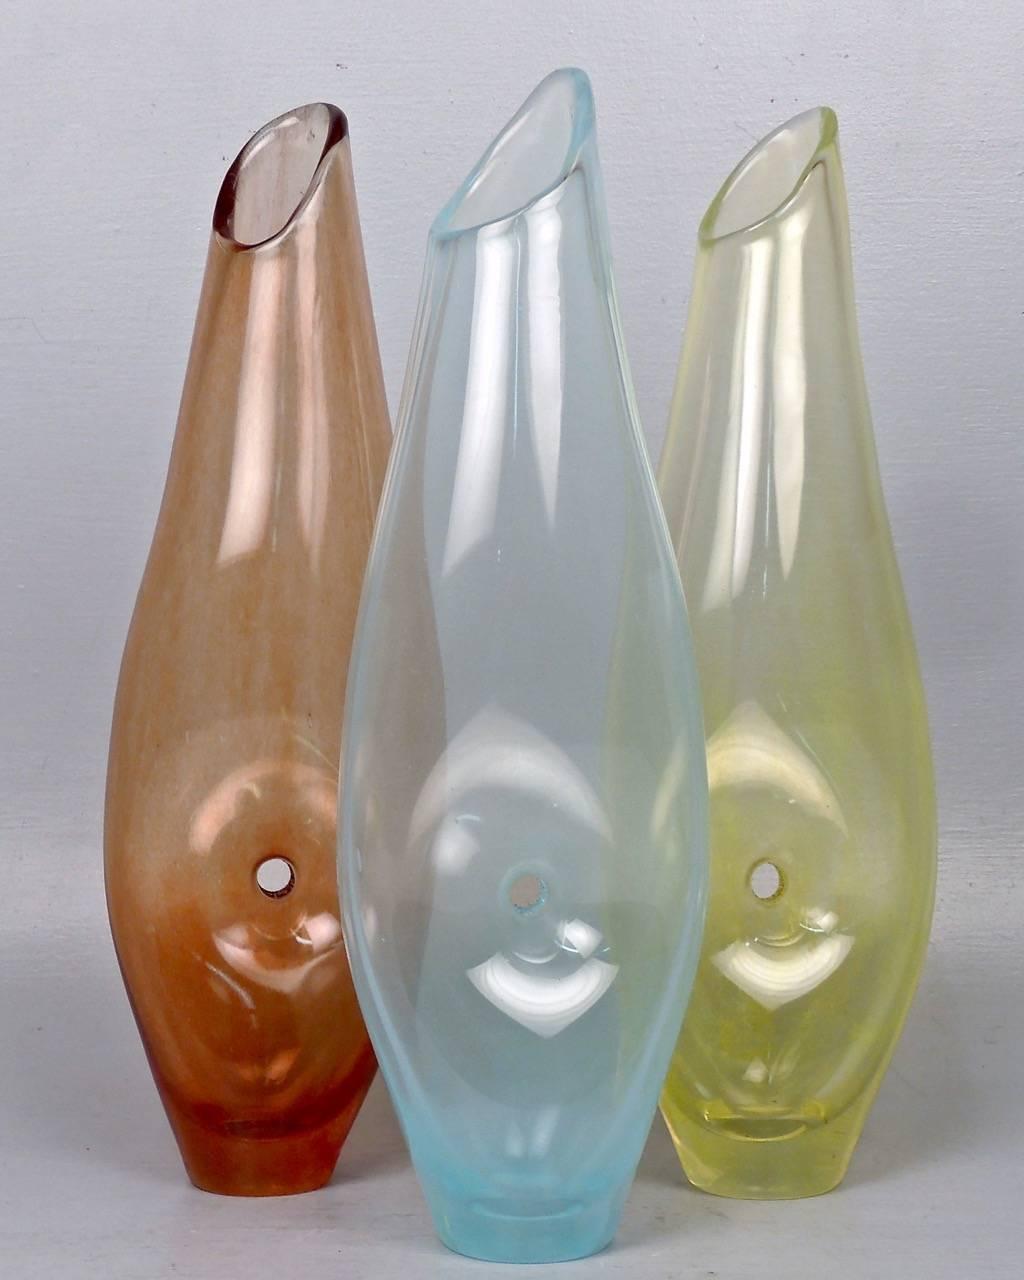 Diese Vasen sind ein Set aus drei komplementären, organischen, modernistischen Vasen der bekannten brasilianischen Künstlerin und Designerin Jacqueline Terpins. 

Jede Vase hat eine durchbrochene Mitte und eine helle, fast streifige Farbverteilung.